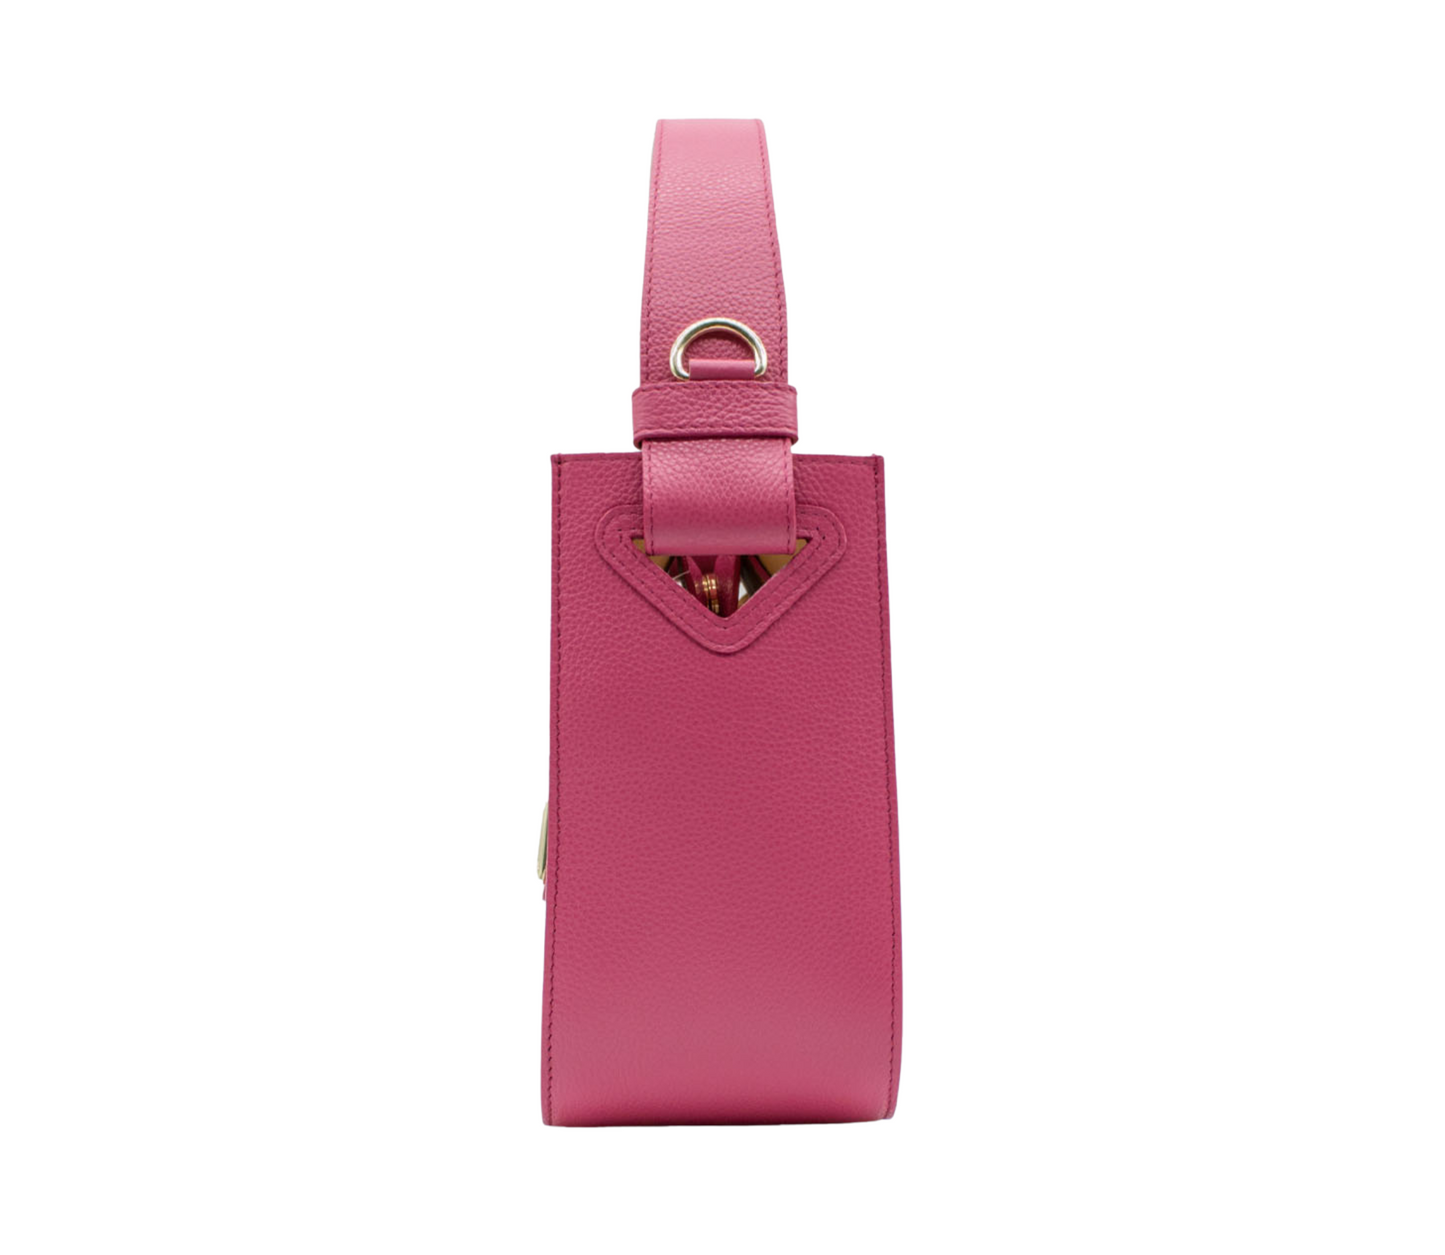 Cavalinho Muse Leather Handbag - HotPink - 18300475.18_P03